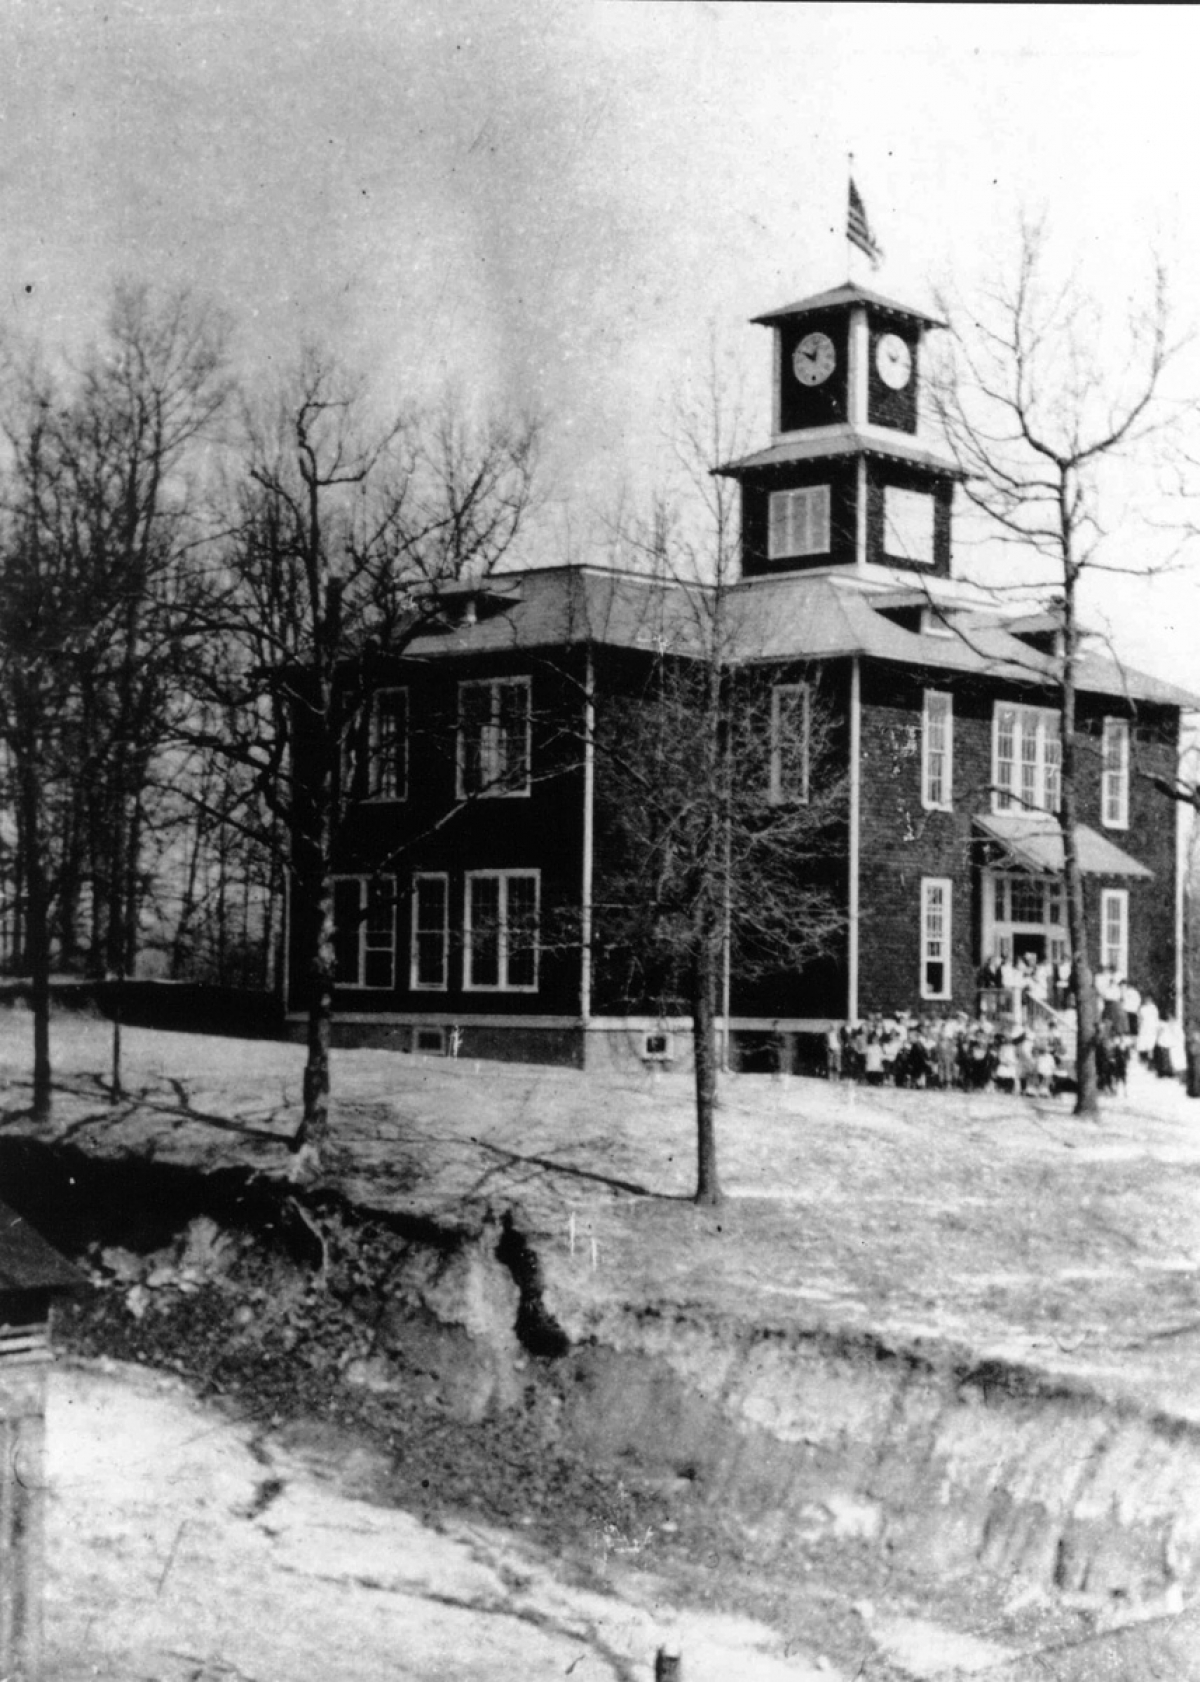 Town Clock School, 1919-1950